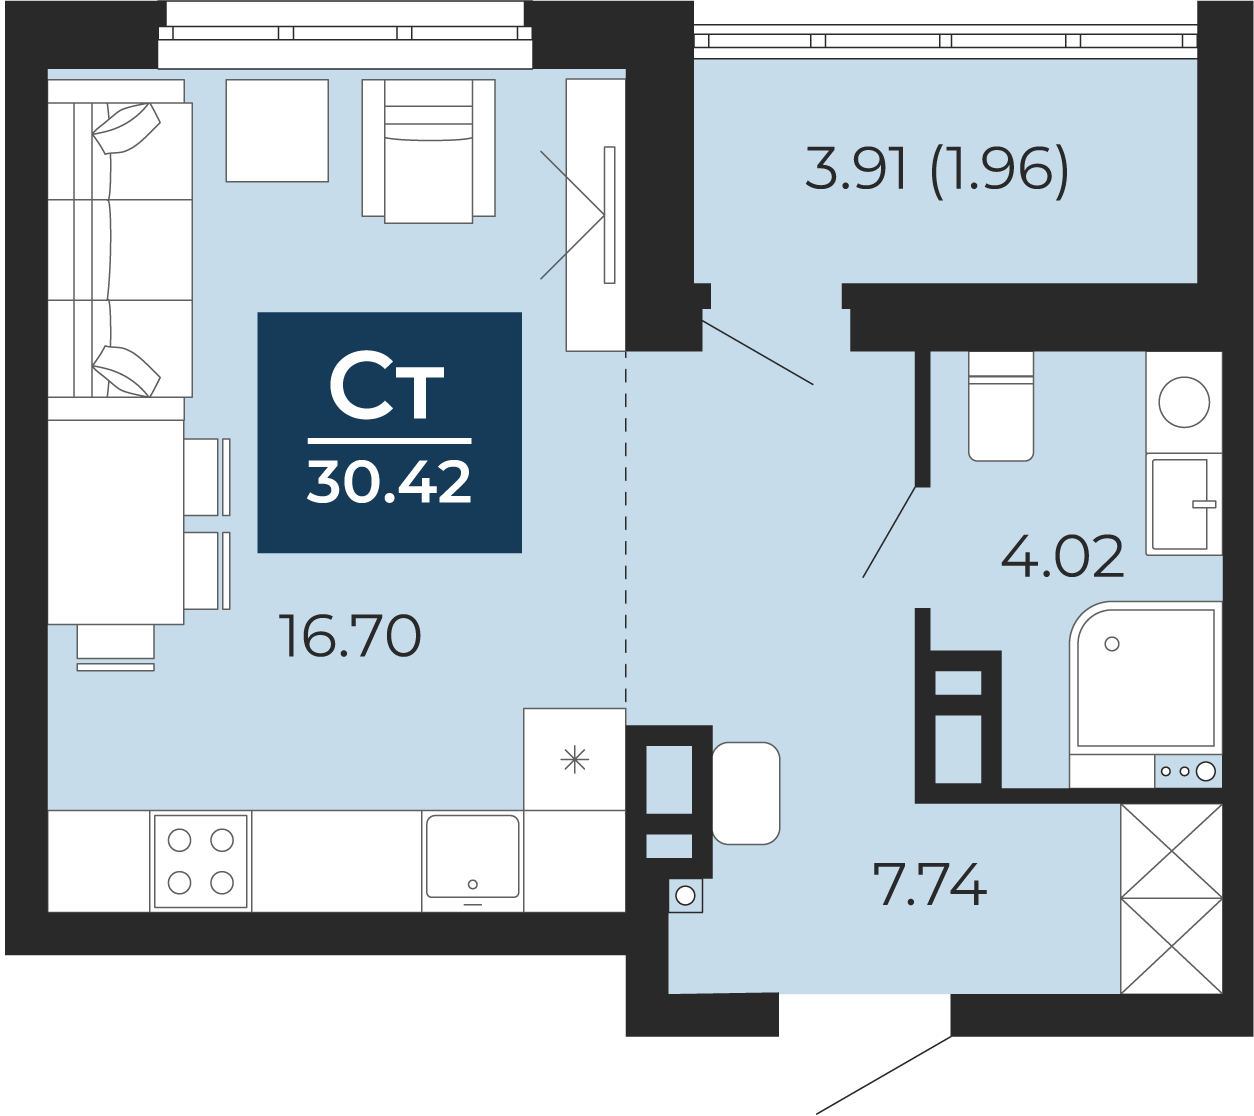 Квартира № 339, Студия, 30.42 кв. м, 8 этаж